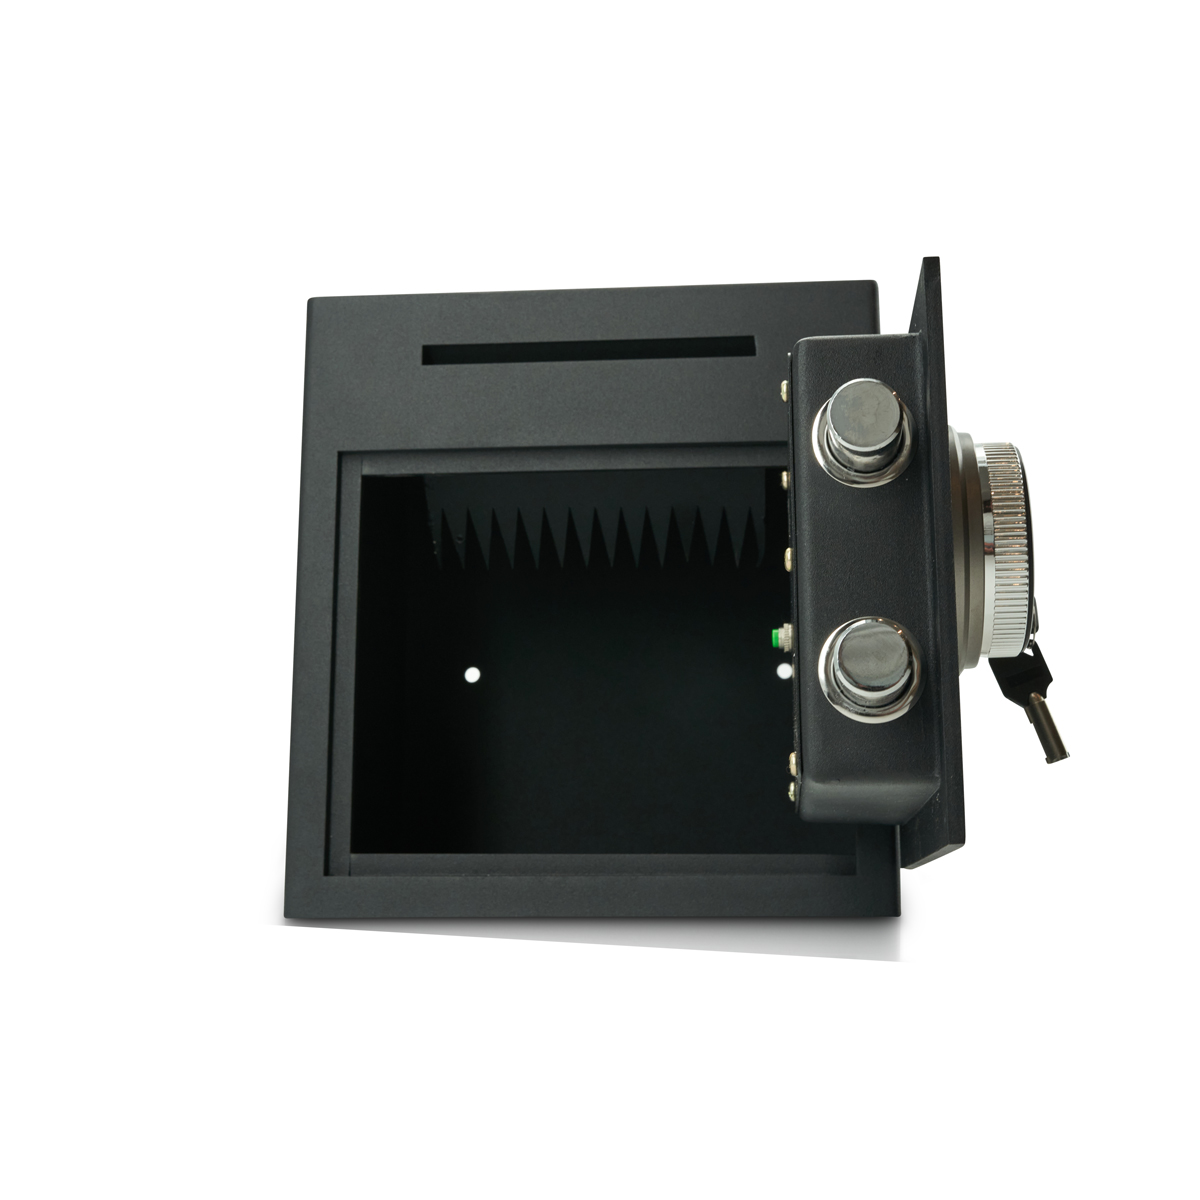 Caja fuerte de depósito con cerradura de código PIN con huella dactilar | Escáner de huellas dactilares | Gastronomía